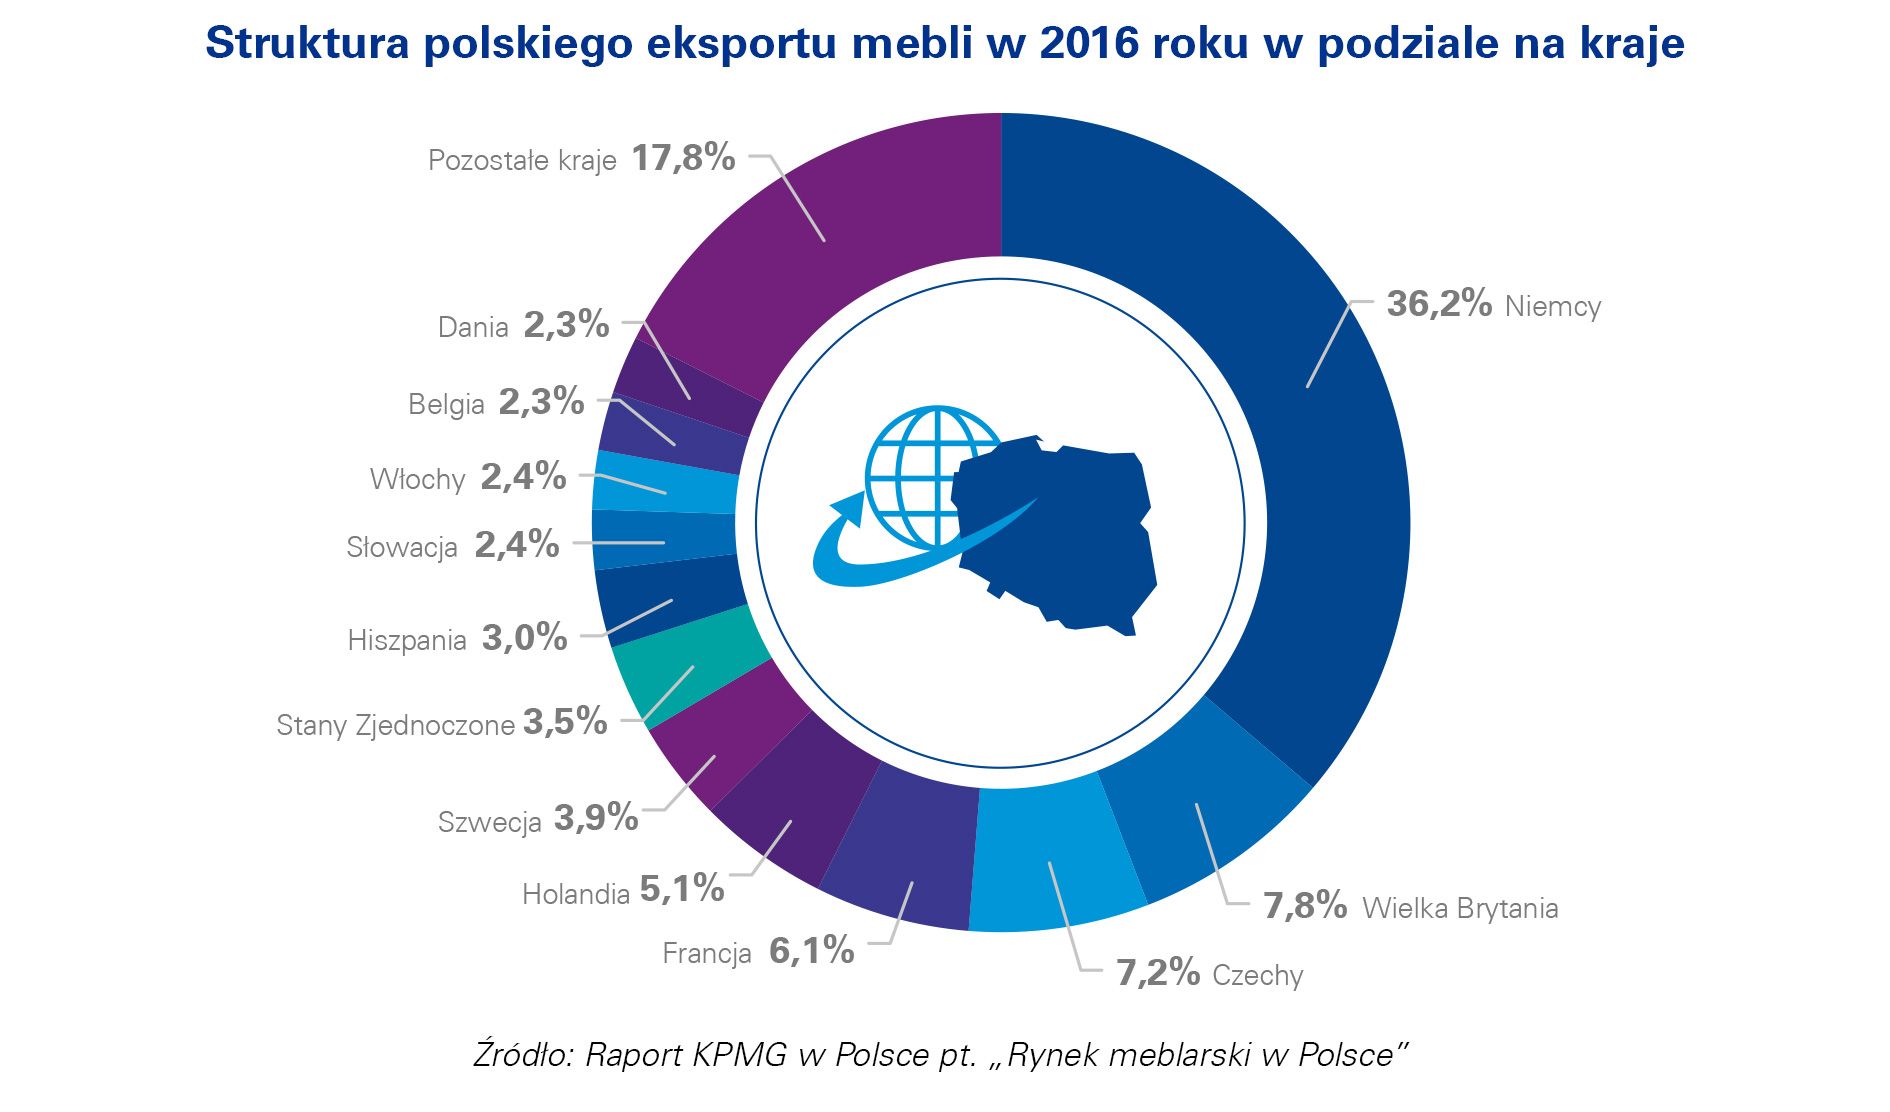 Struktura polskiego eksportu mebli w 2016 roku w podziale na kraje